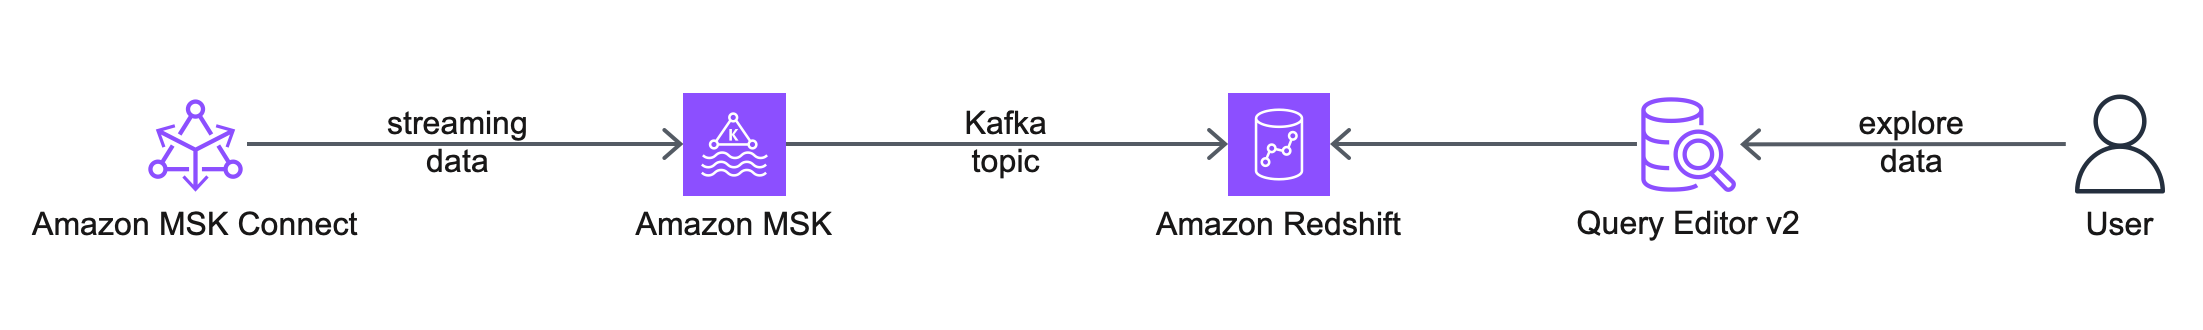 Poenostavite pretakanje podatkov za analitiko z uporabo Amazon MSK in Amazon Redshift | Spletne storitve Amazon